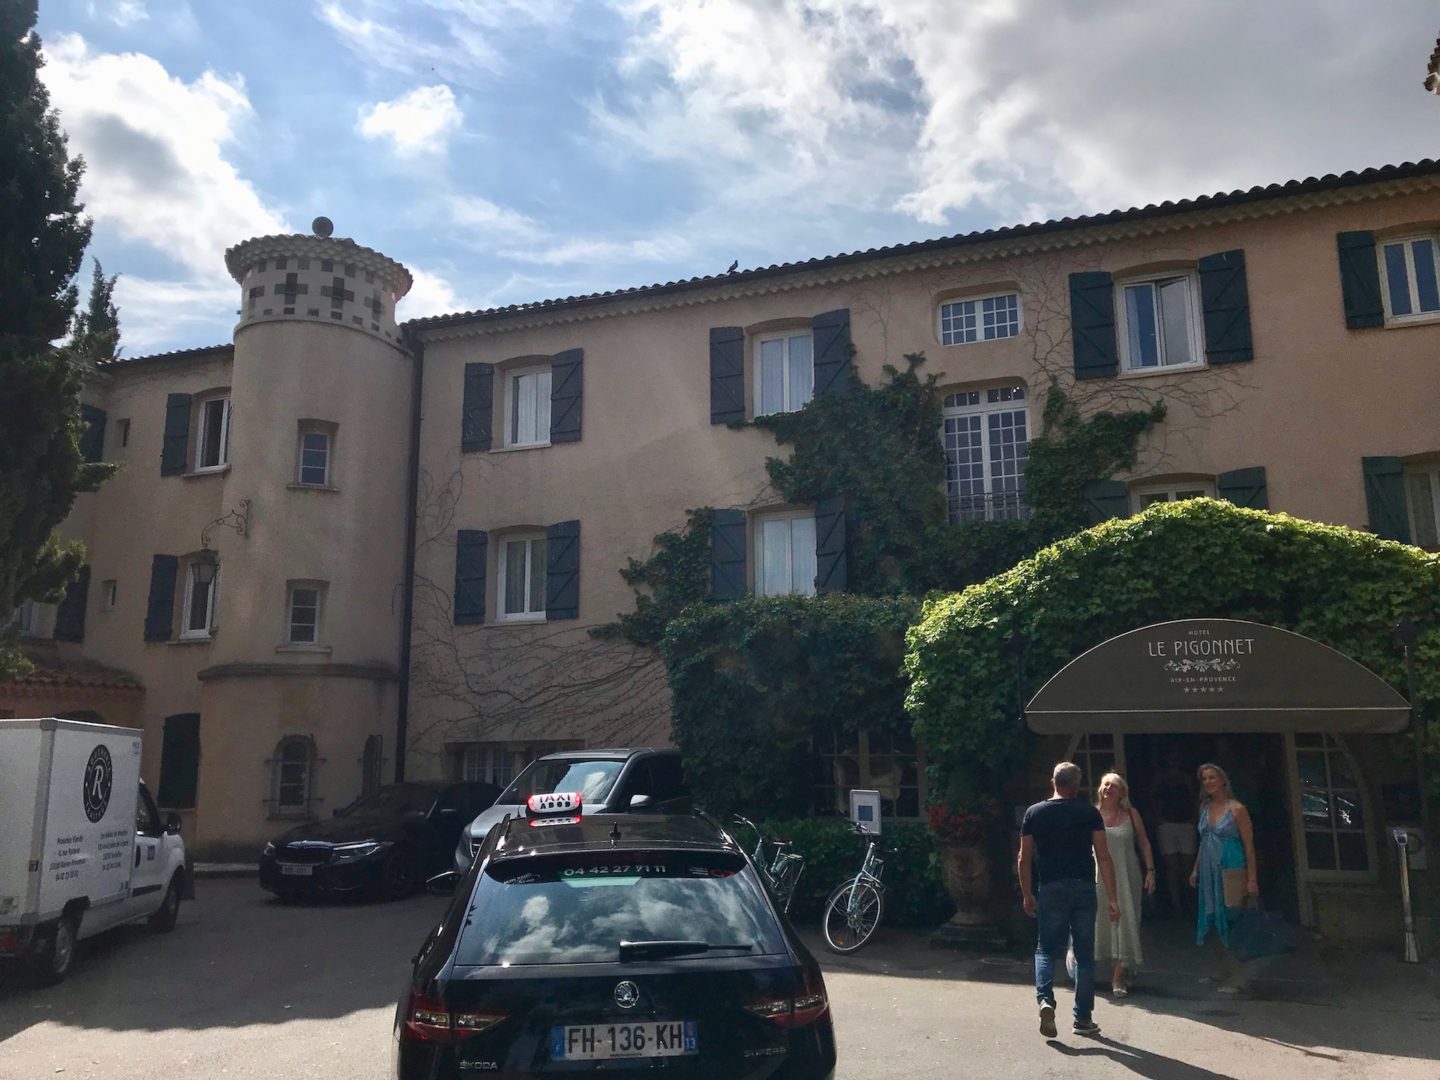 Hôtel Le Pigonnet, Aix-en-Provence